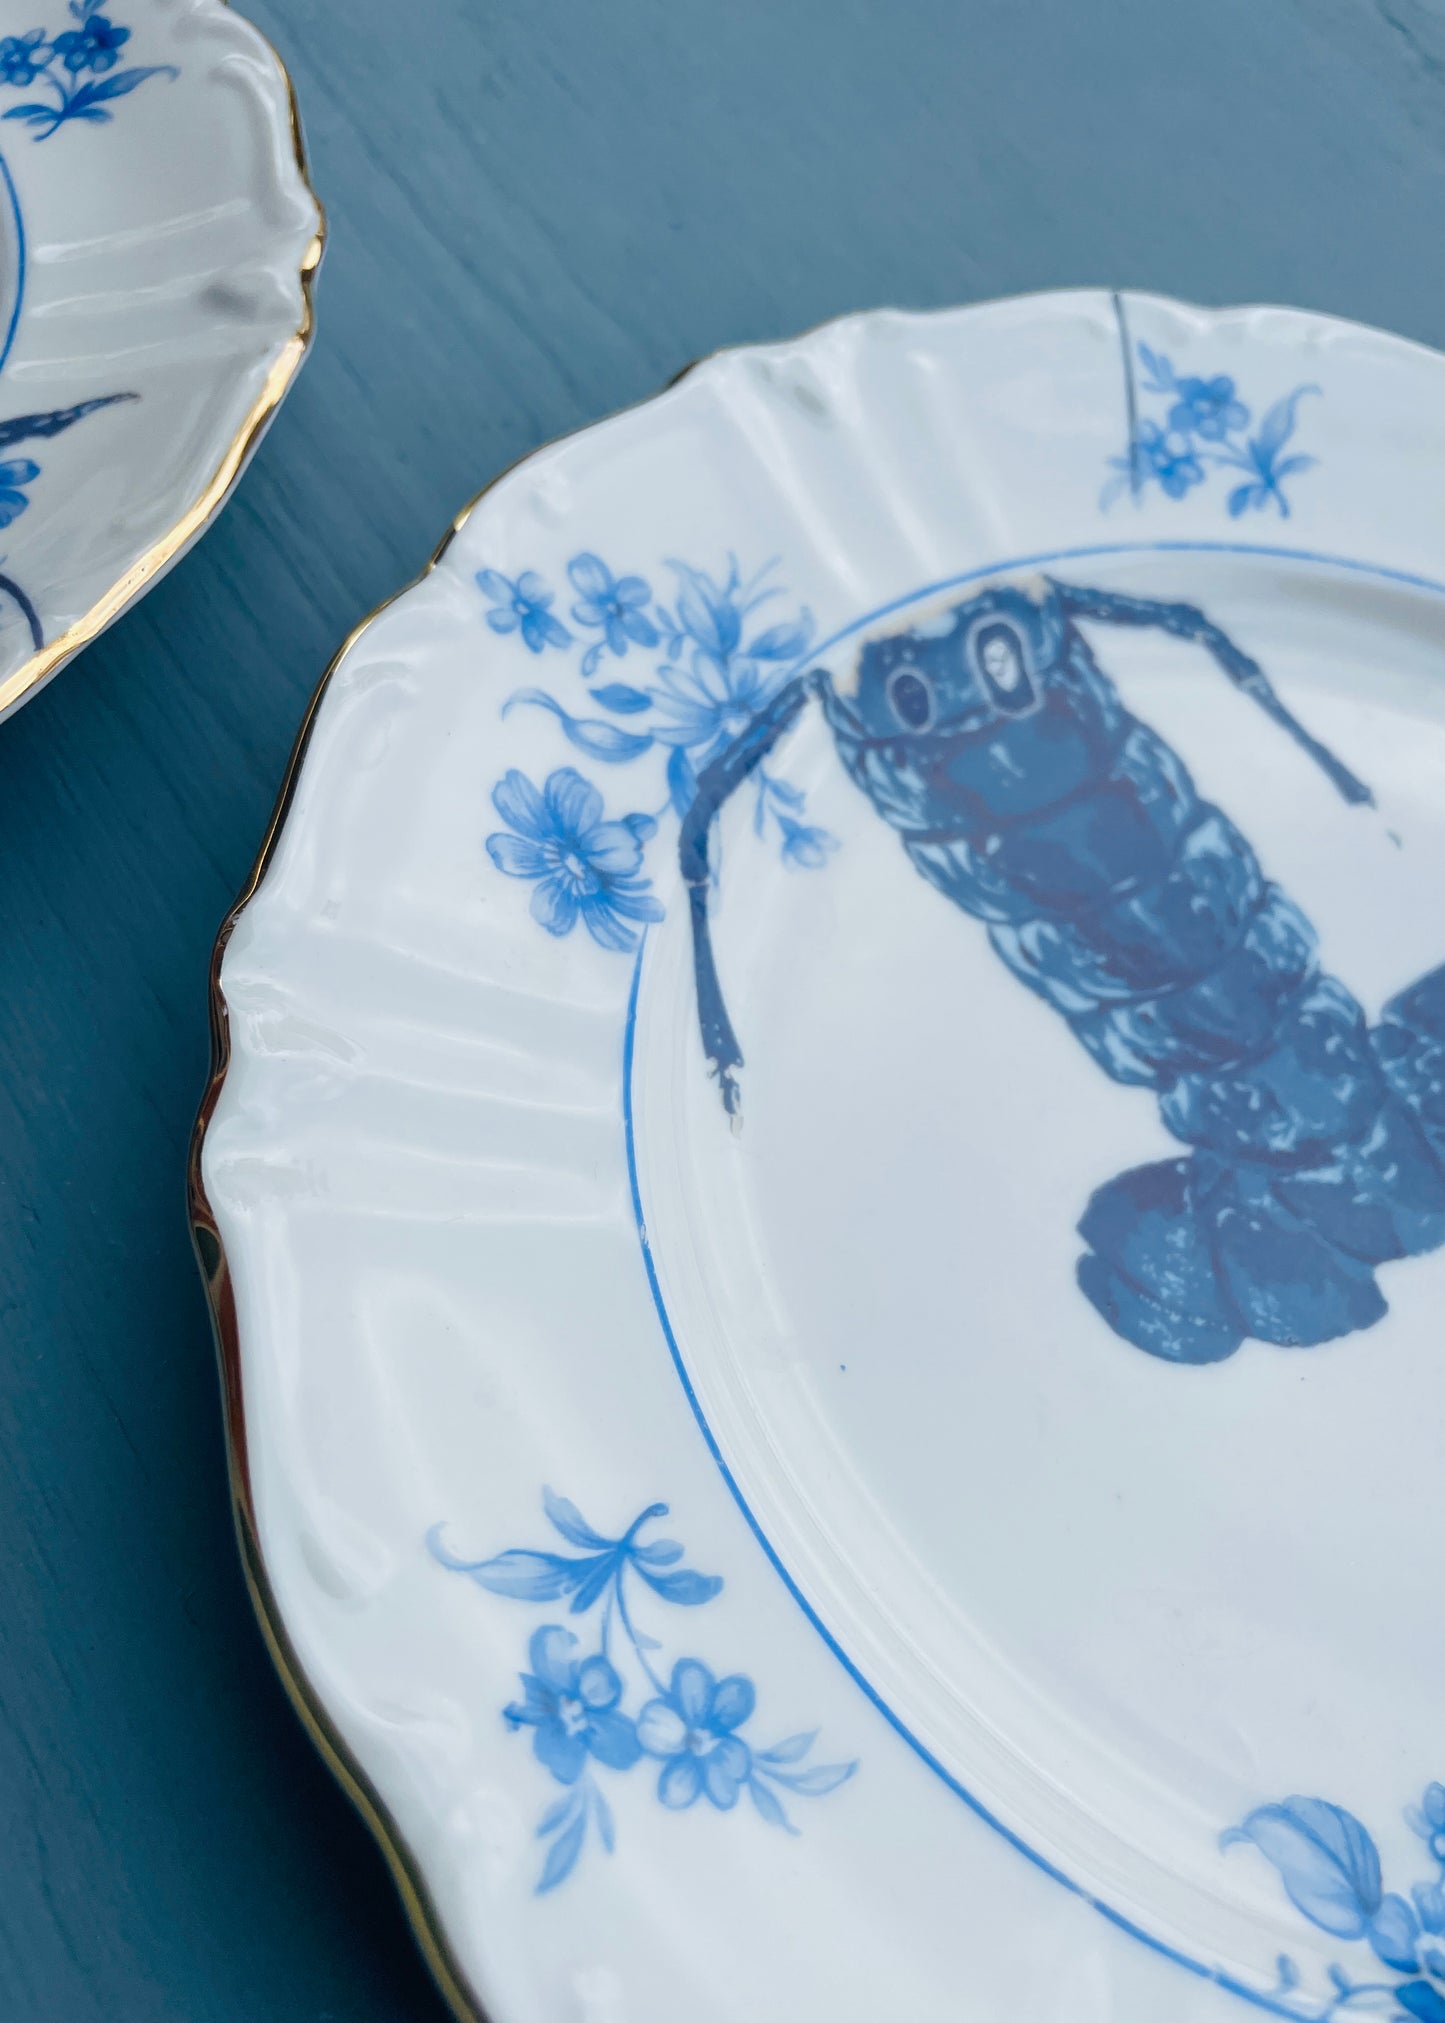 Wandborden set - Lobster in blue